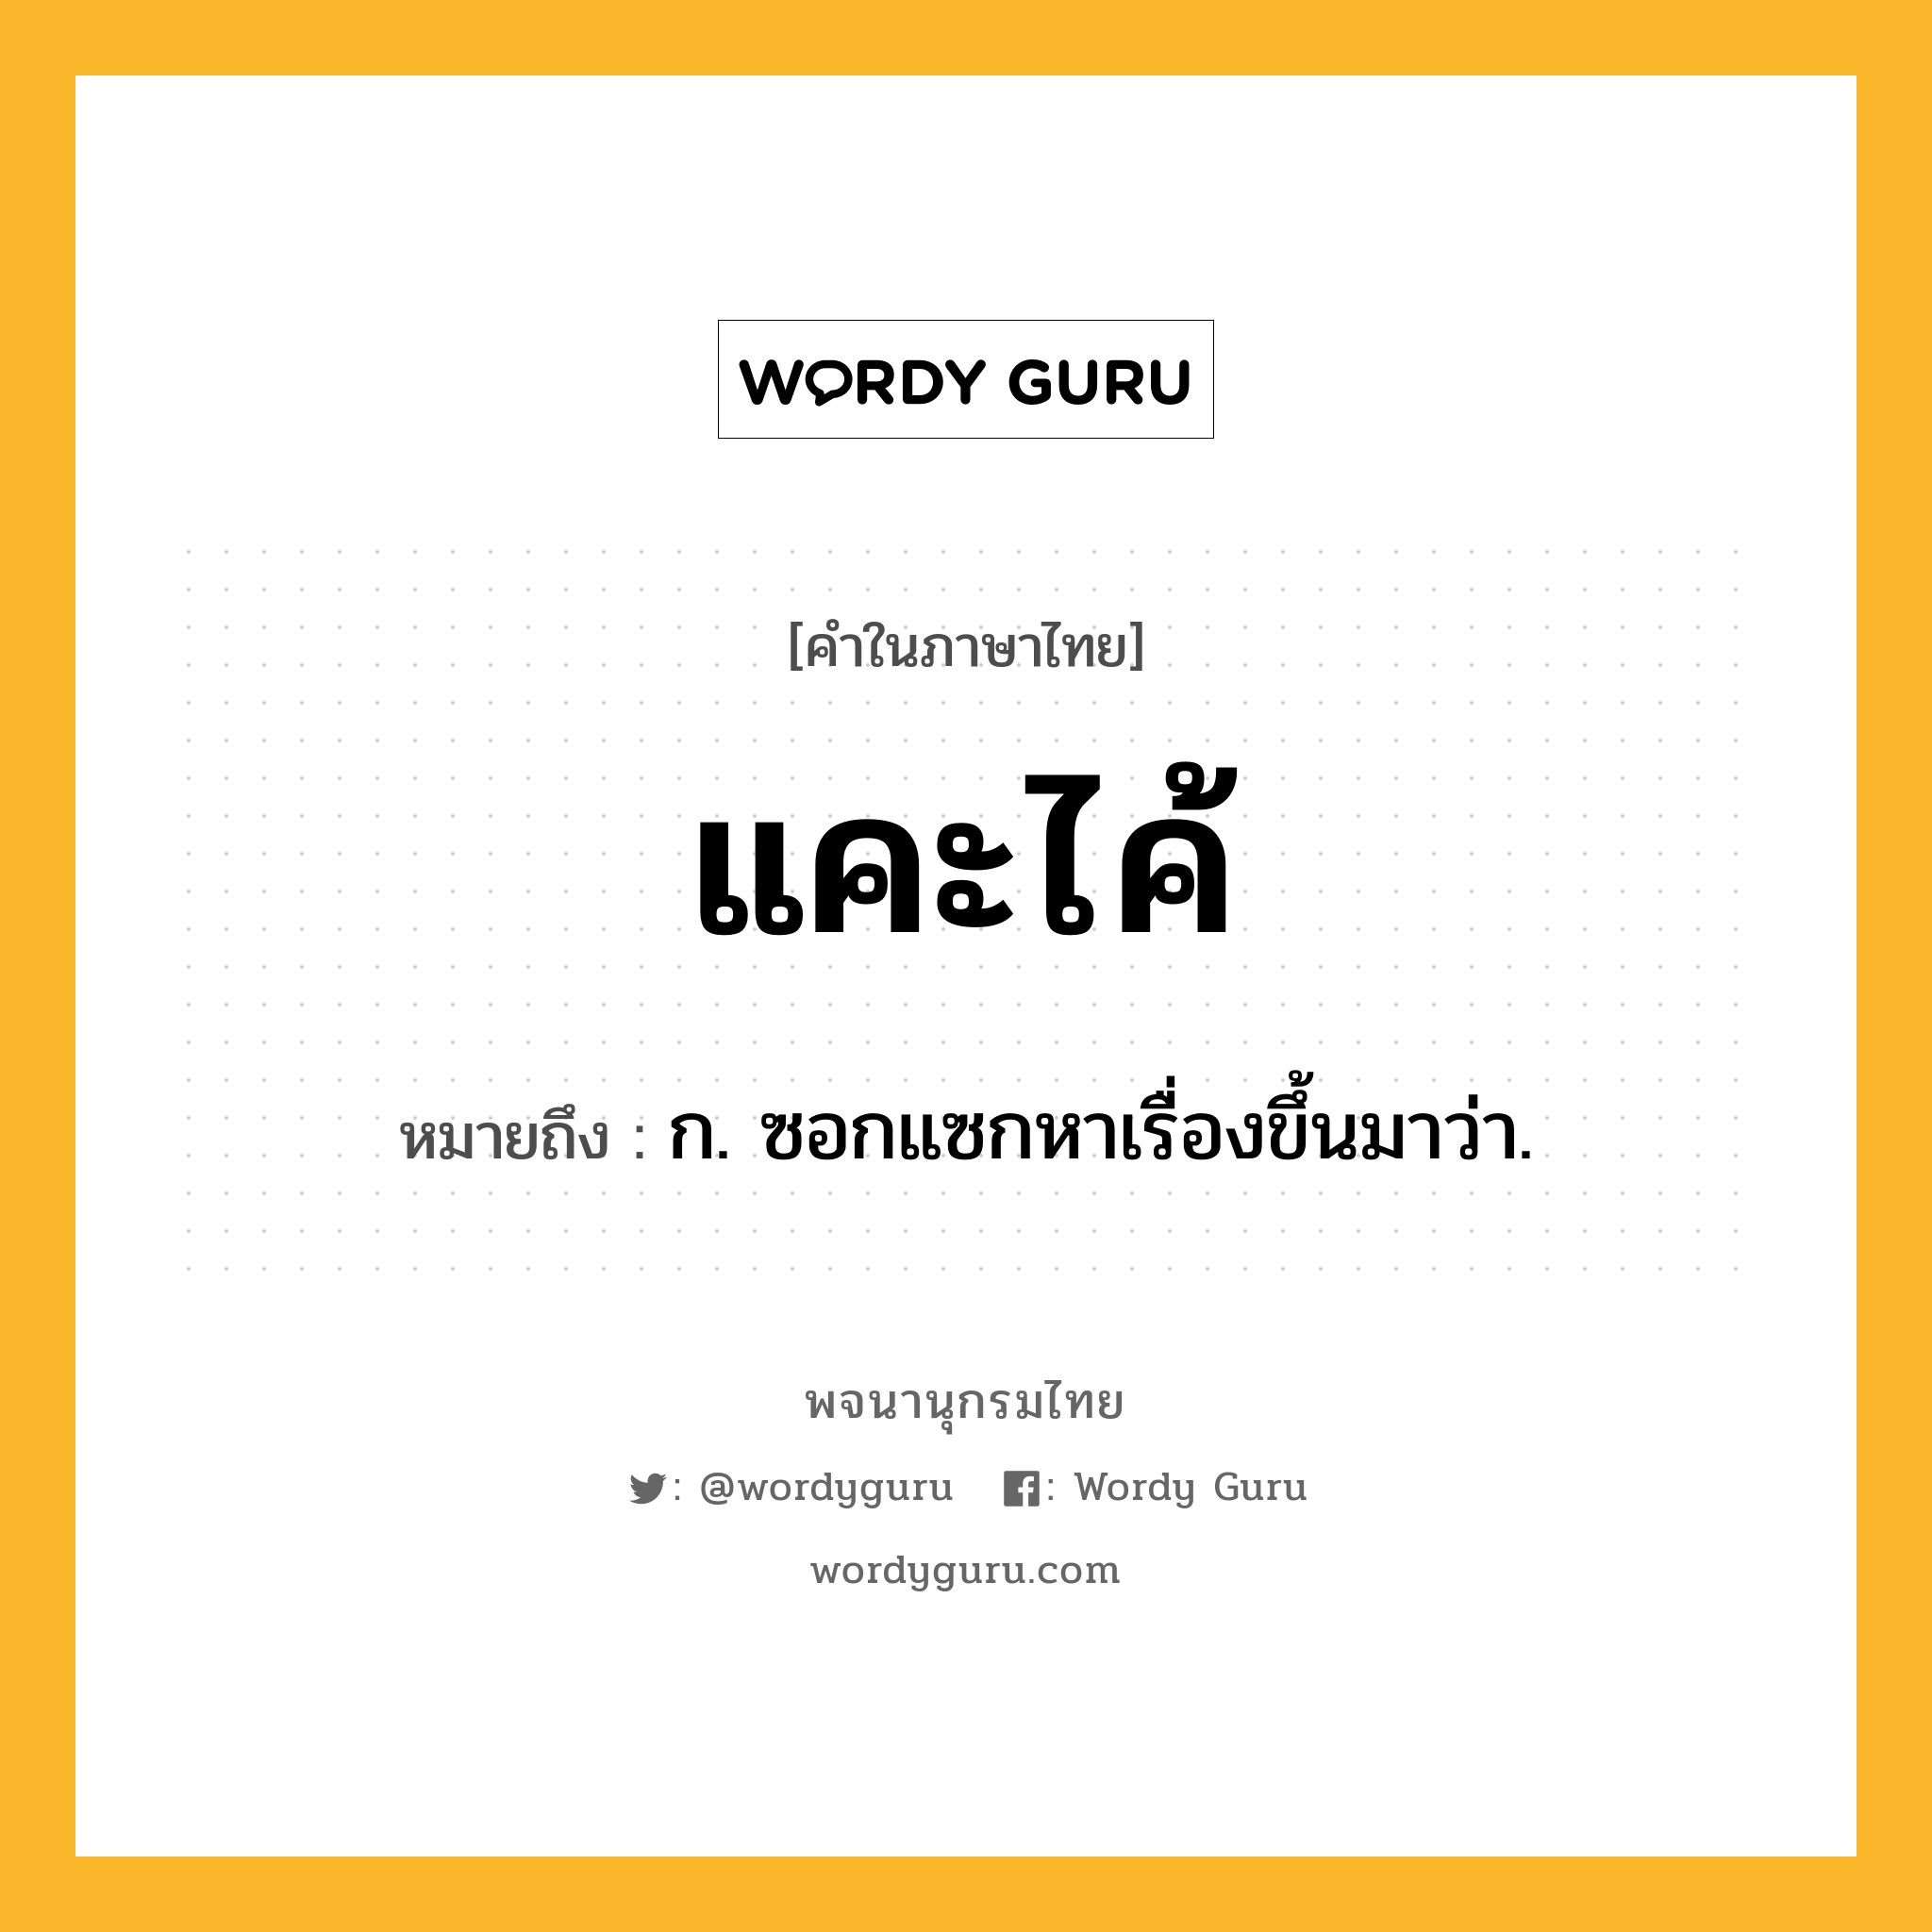 แคะไค้ หมายถึงอะไร?, คำในภาษาไทย แคะไค้ หมายถึง ก. ซอกแซกหาเรื่องขึ้นมาว่า.